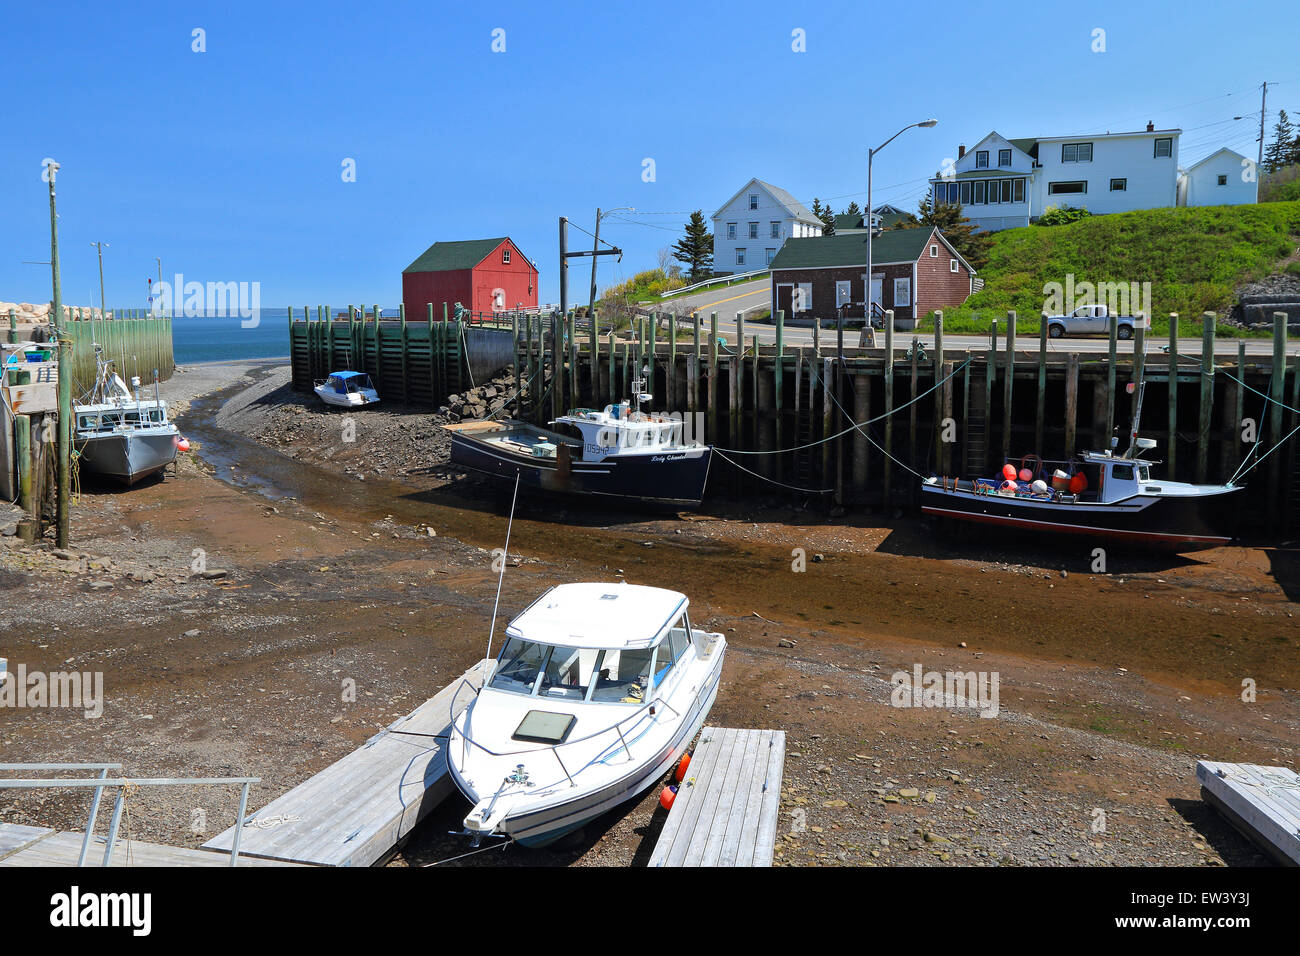 Baia di Fundy, Nova Scotia, Canada. Hall il porto del villaggio di pescatori con la bassa marea con barche da pesca sul fango. Padiglioni del porto. Foto Stock